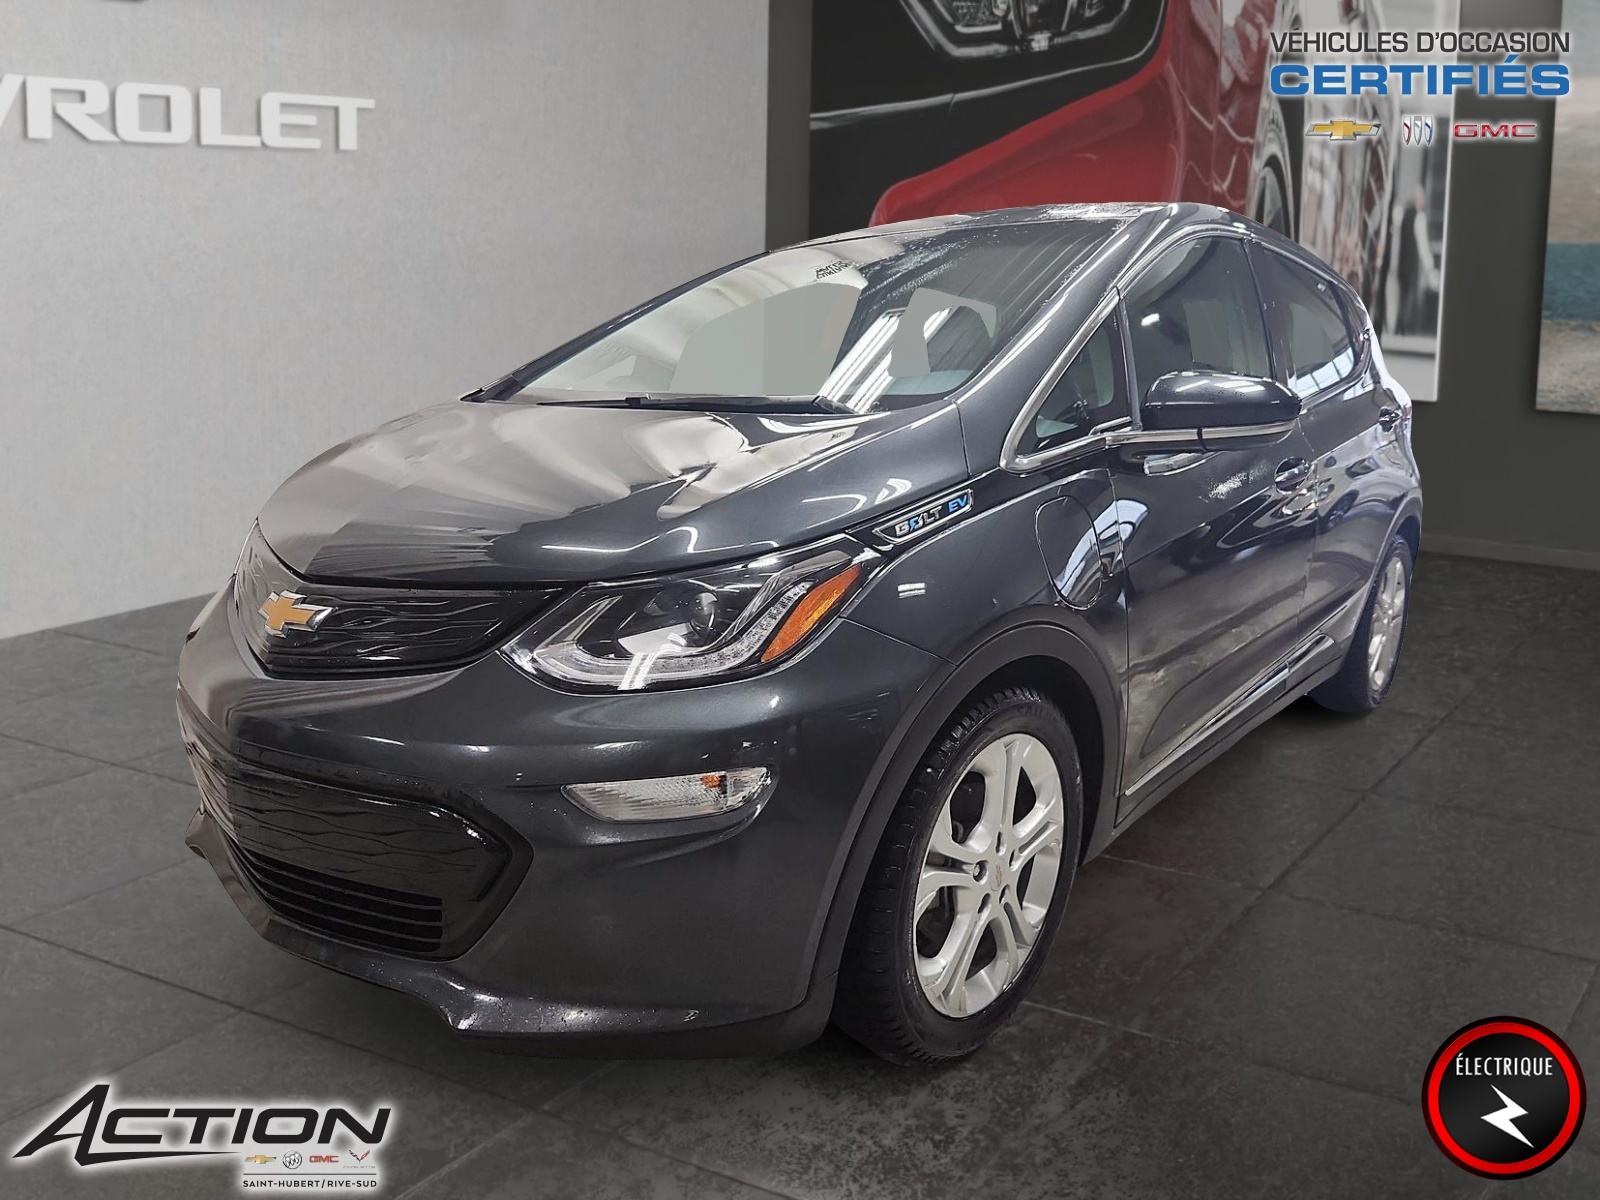 2020 Chevrolet Bolt EV LT - 407Km Autonomie - 100% Électrique